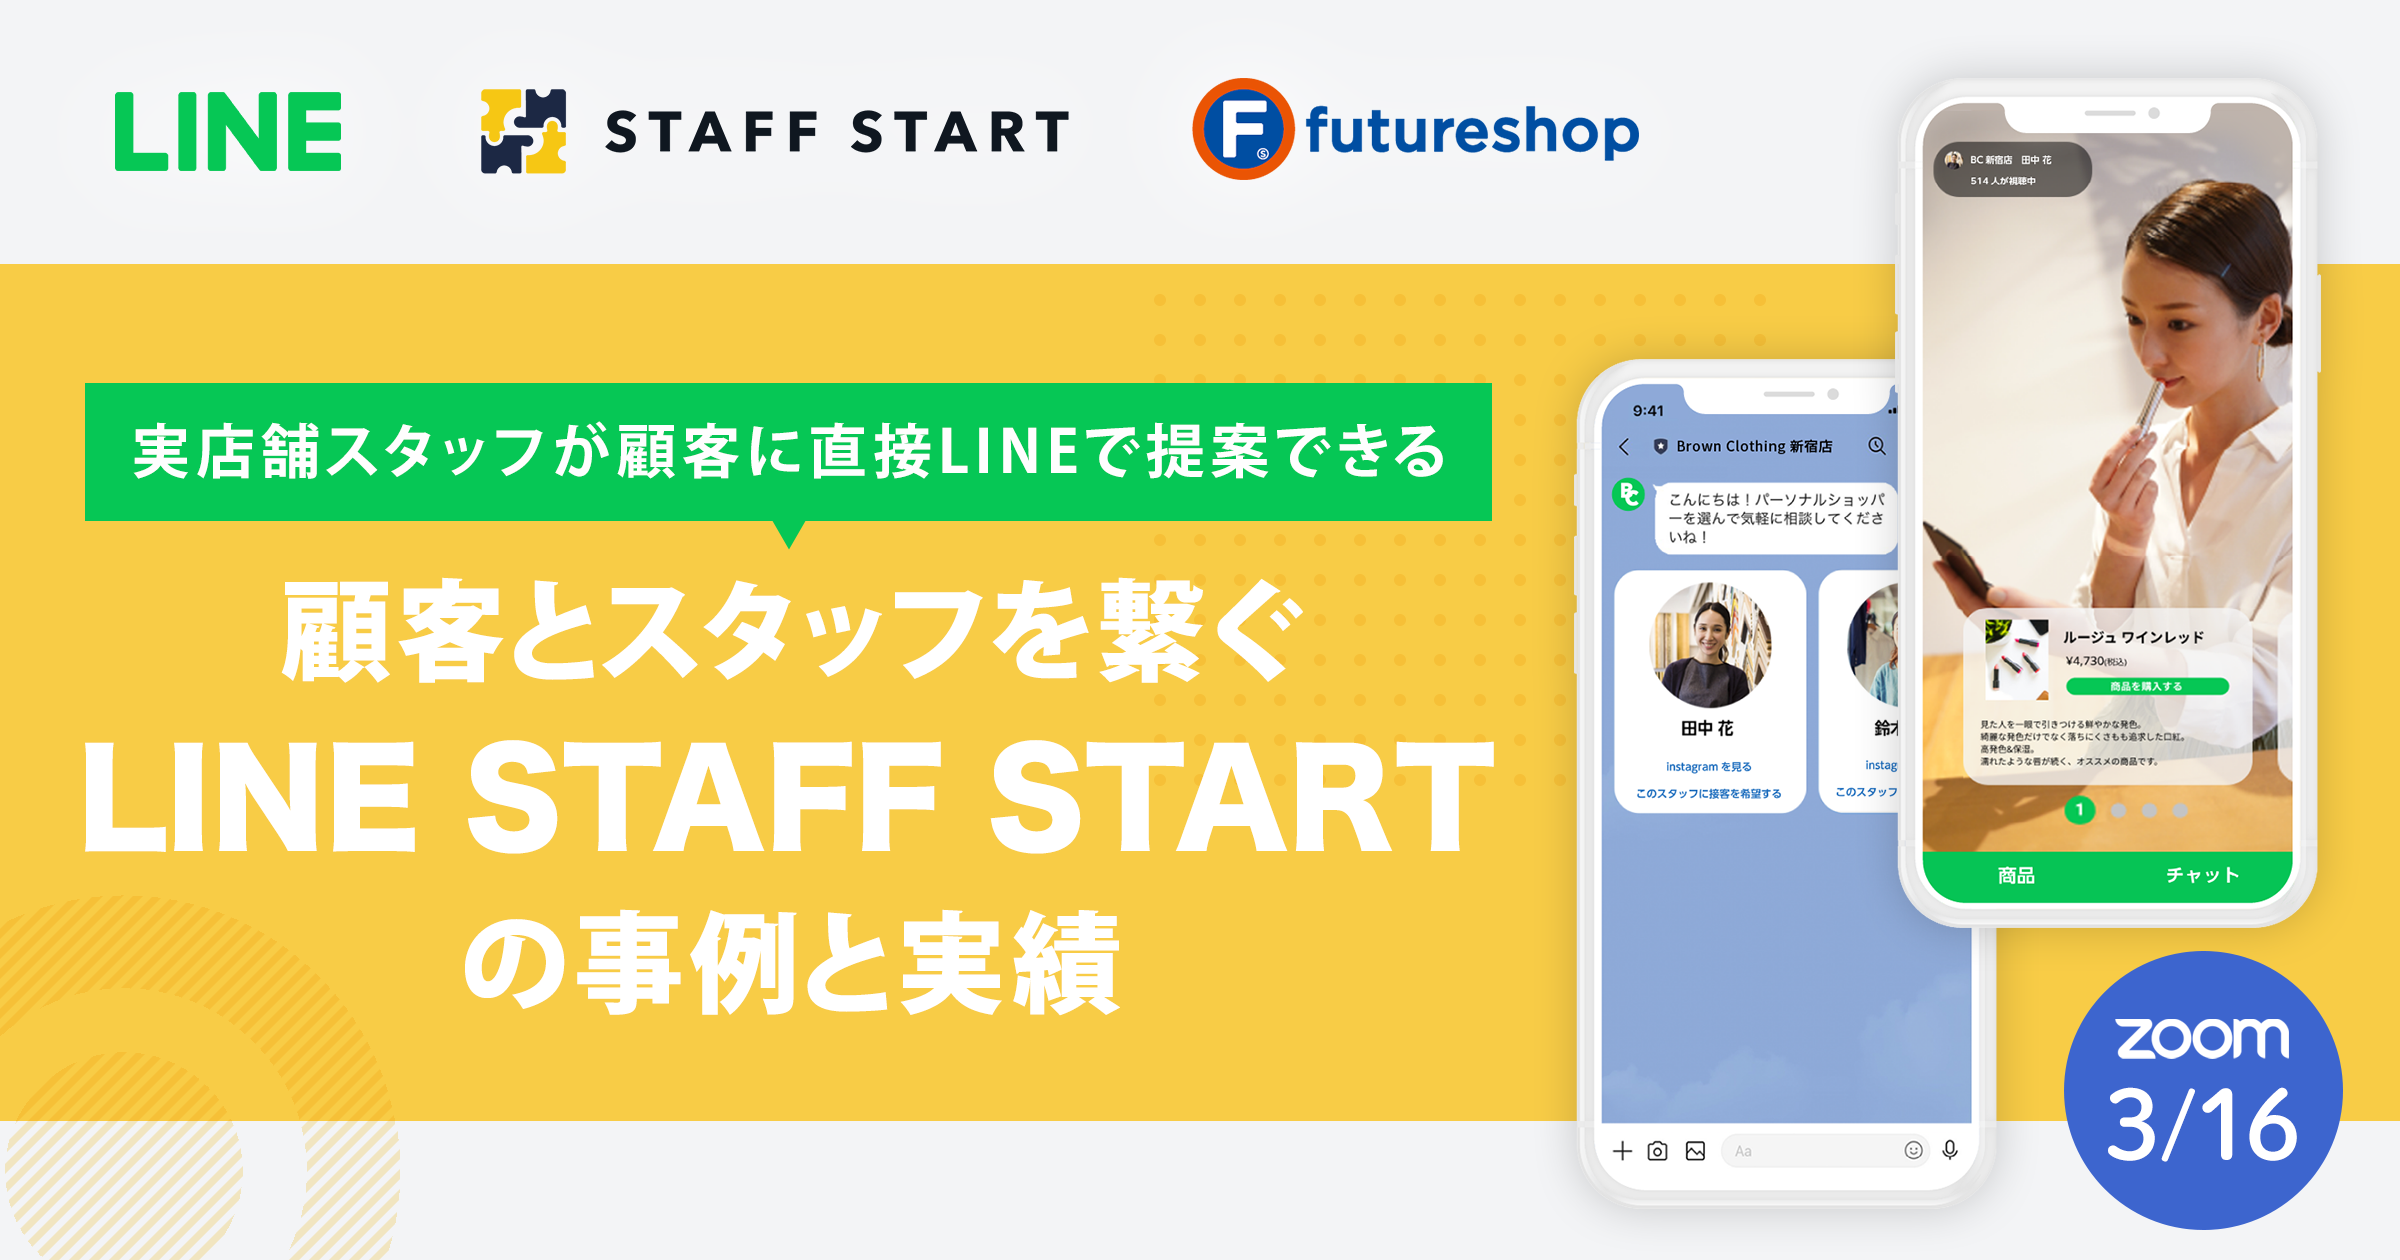 顧客とスタッフを繋ぐ「LINE STAFF START」の事例と実績
